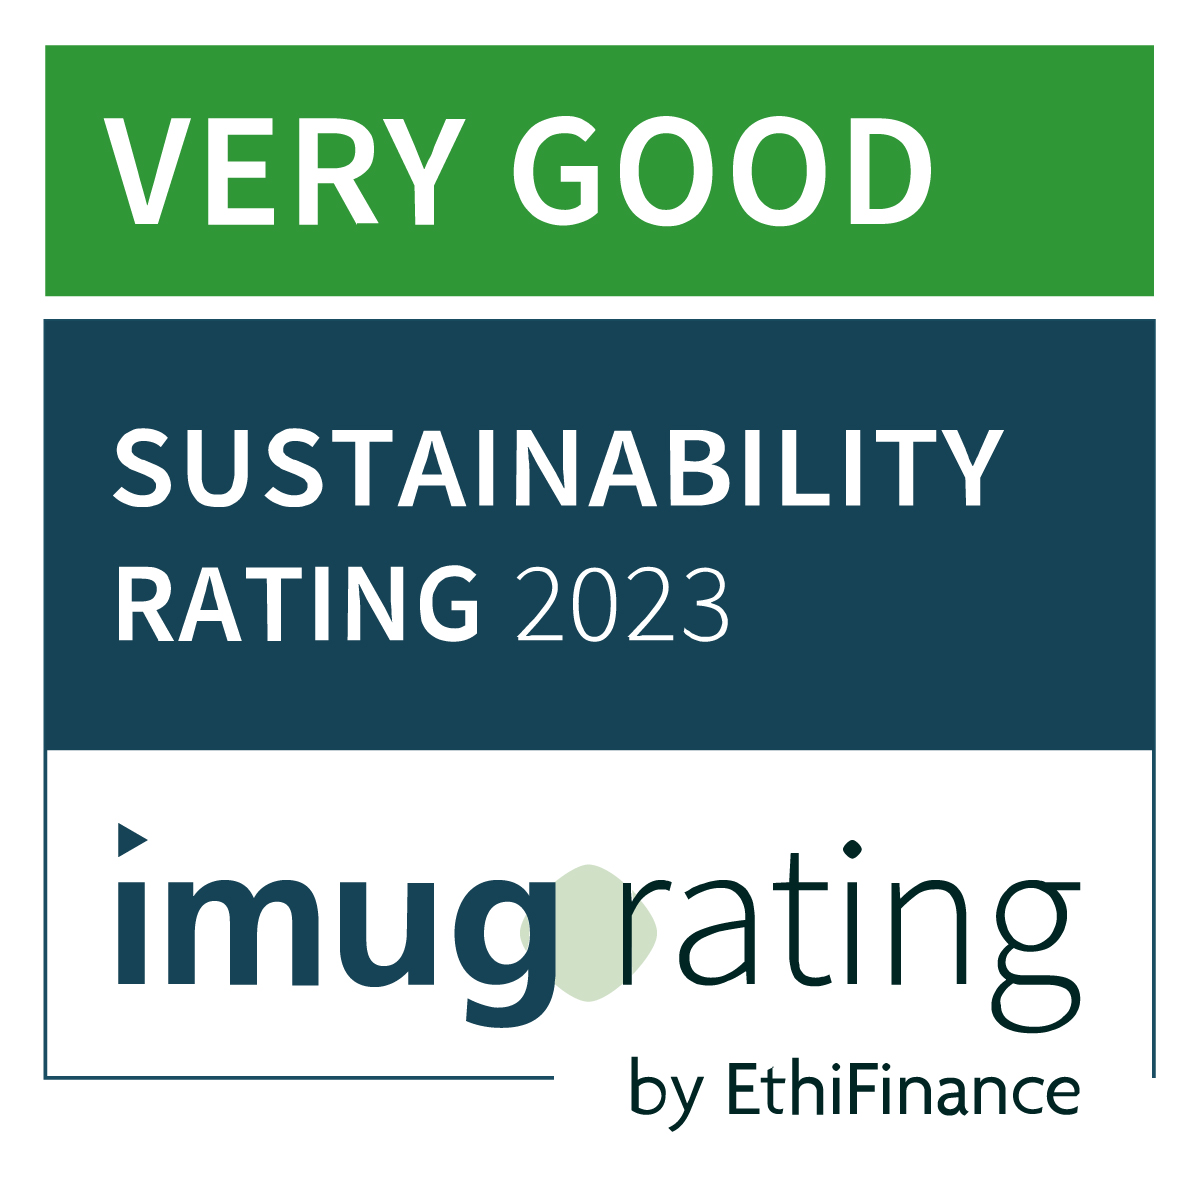 imug-nachhaltigkeits-rating-very-good-2023.jpg (247 KB)